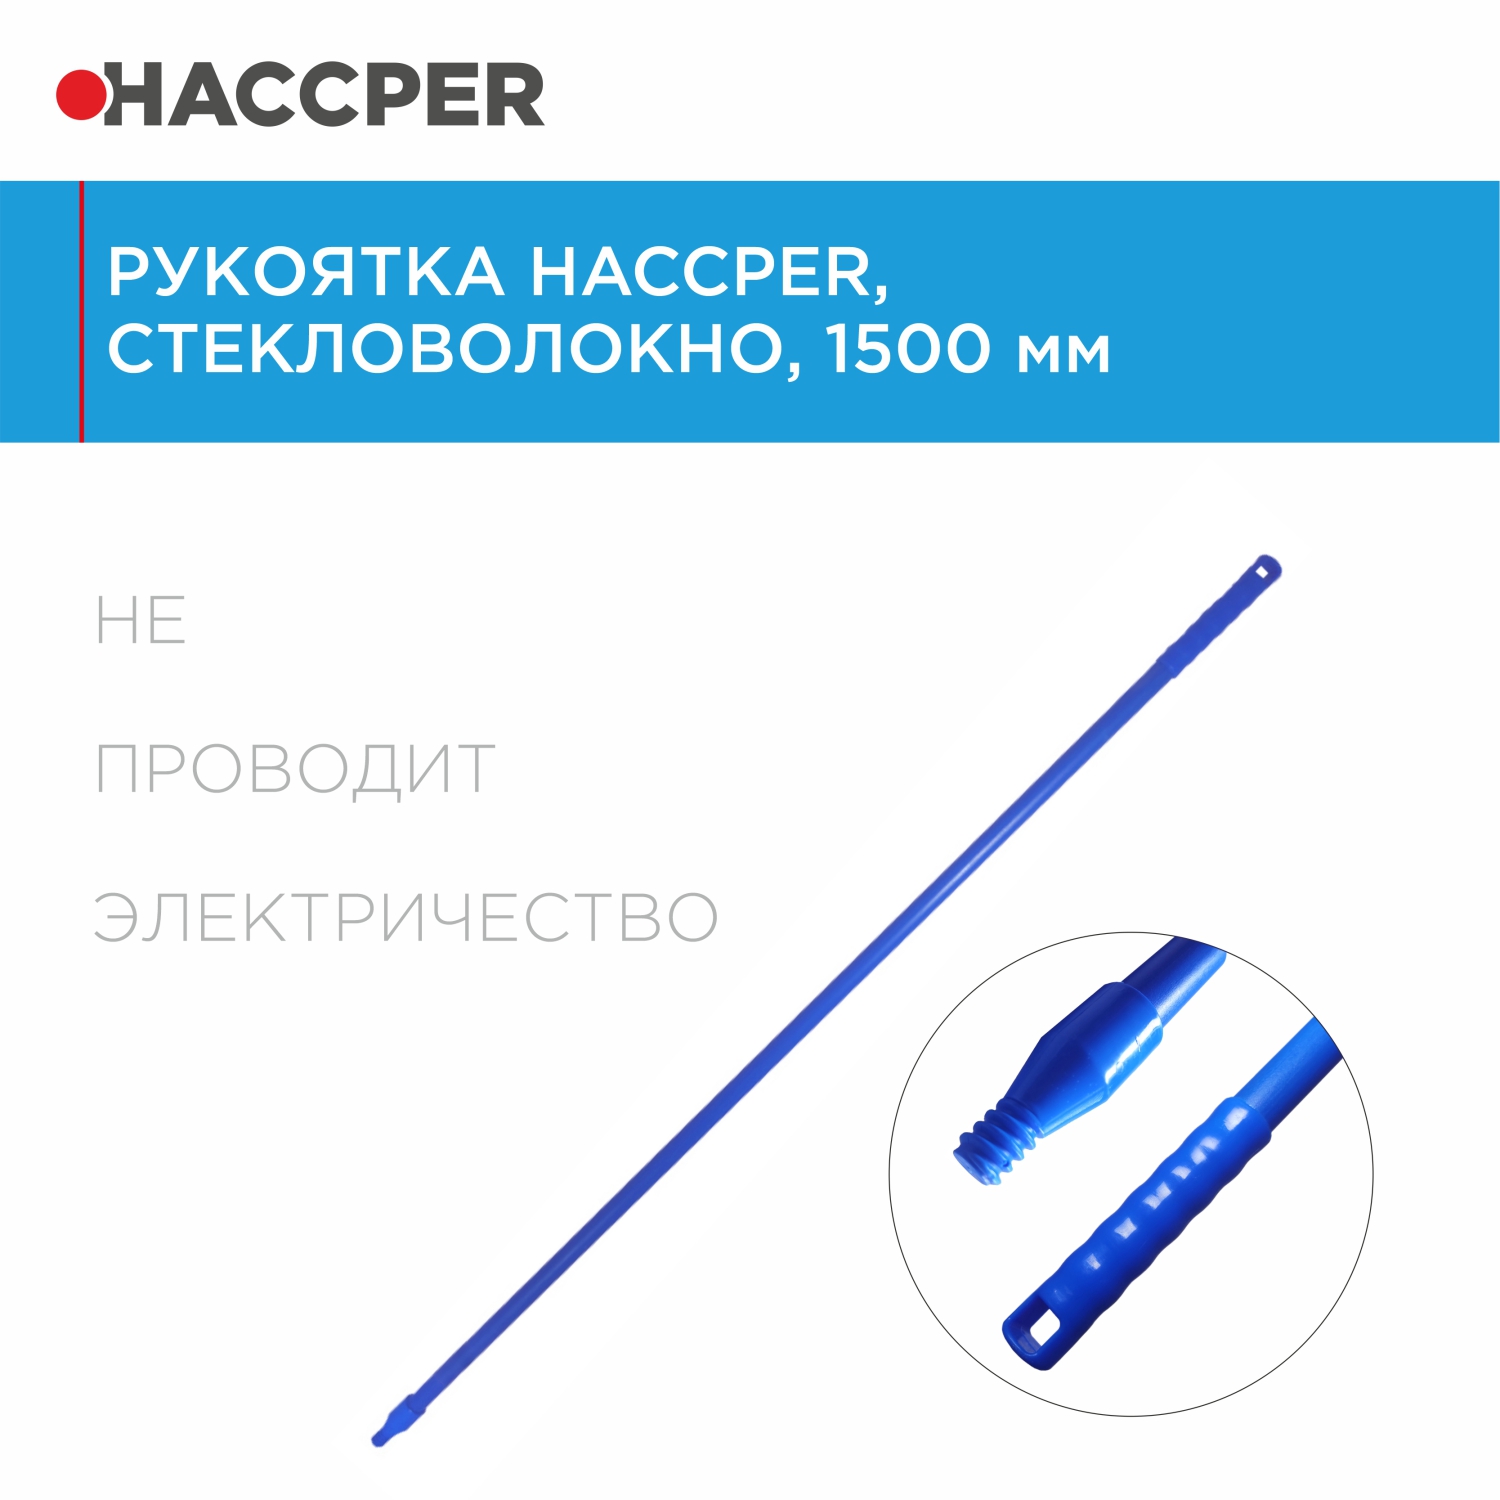 Рукоятка HACCPER стекловолокно, 1500 мм, синяя